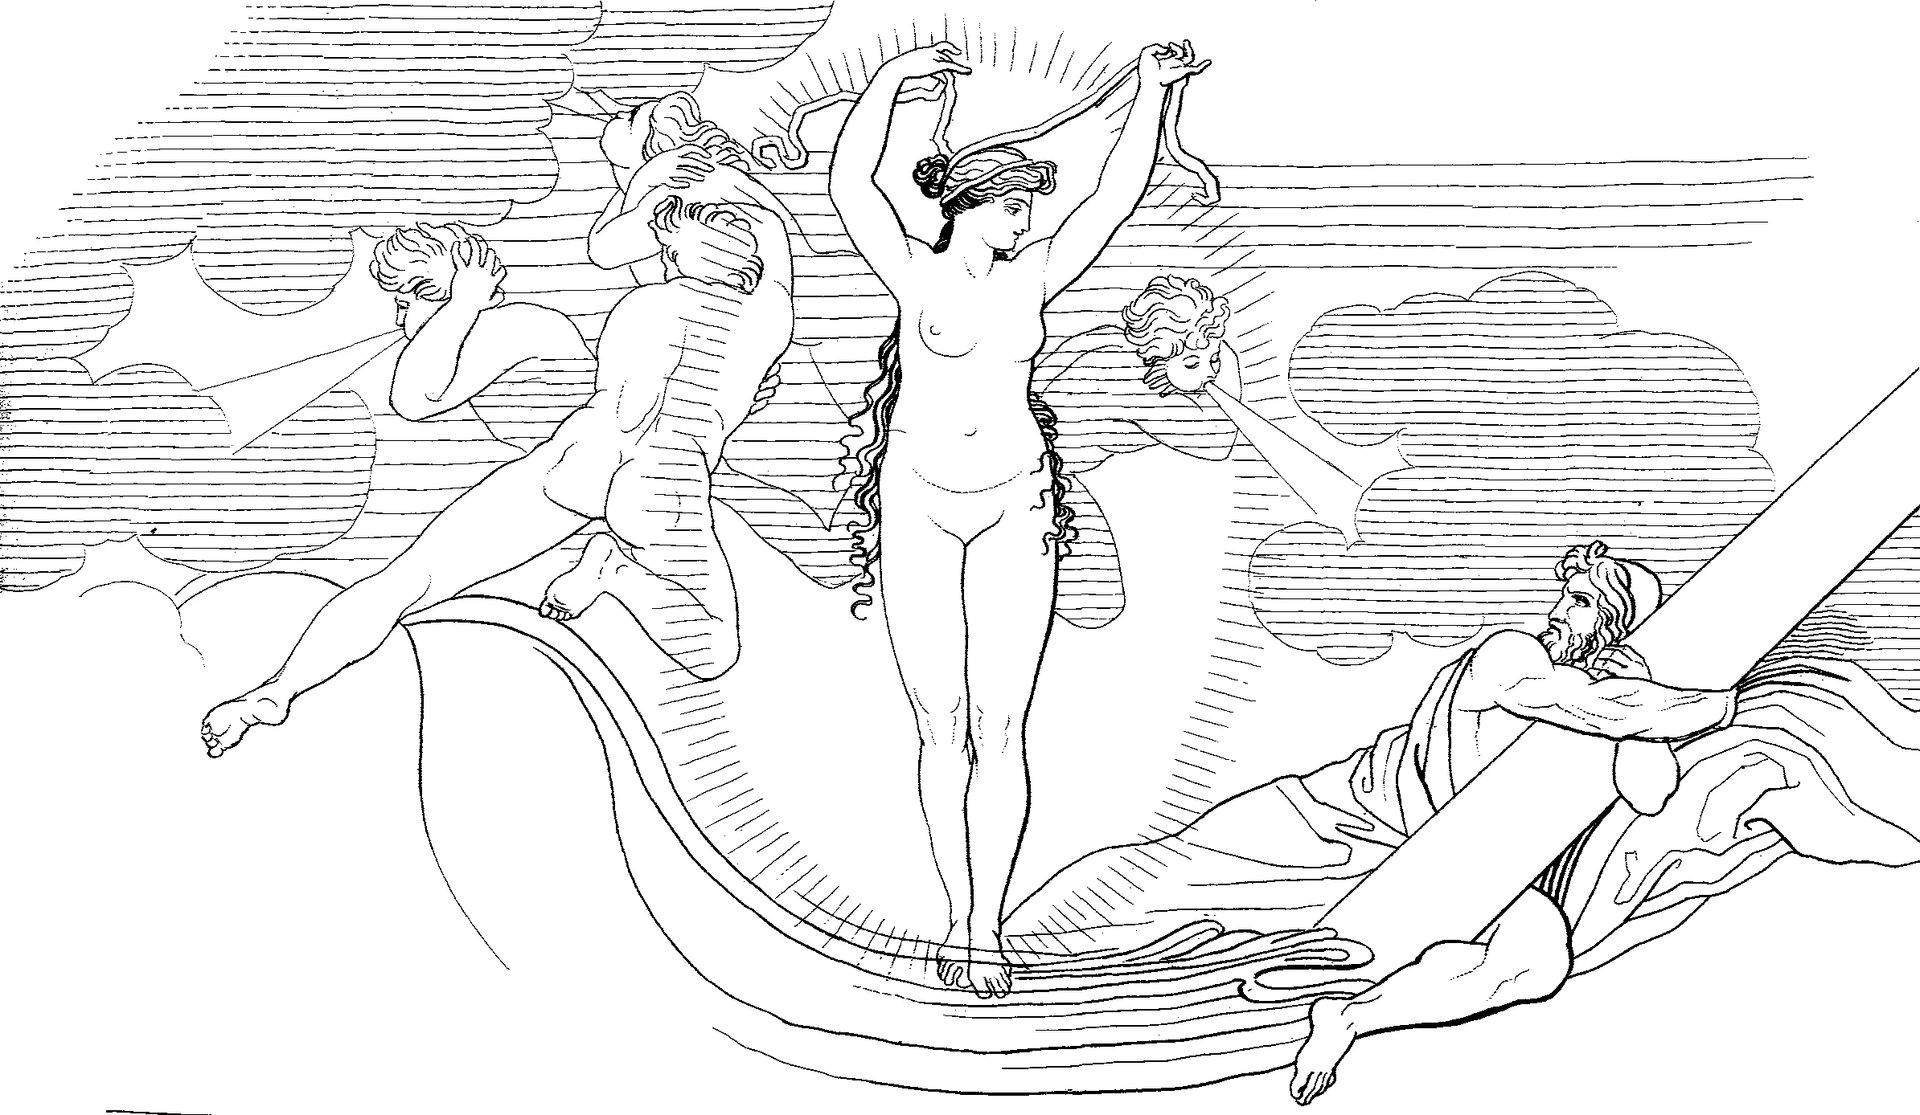 Джон Флаксман - Одиссей и Цирцея